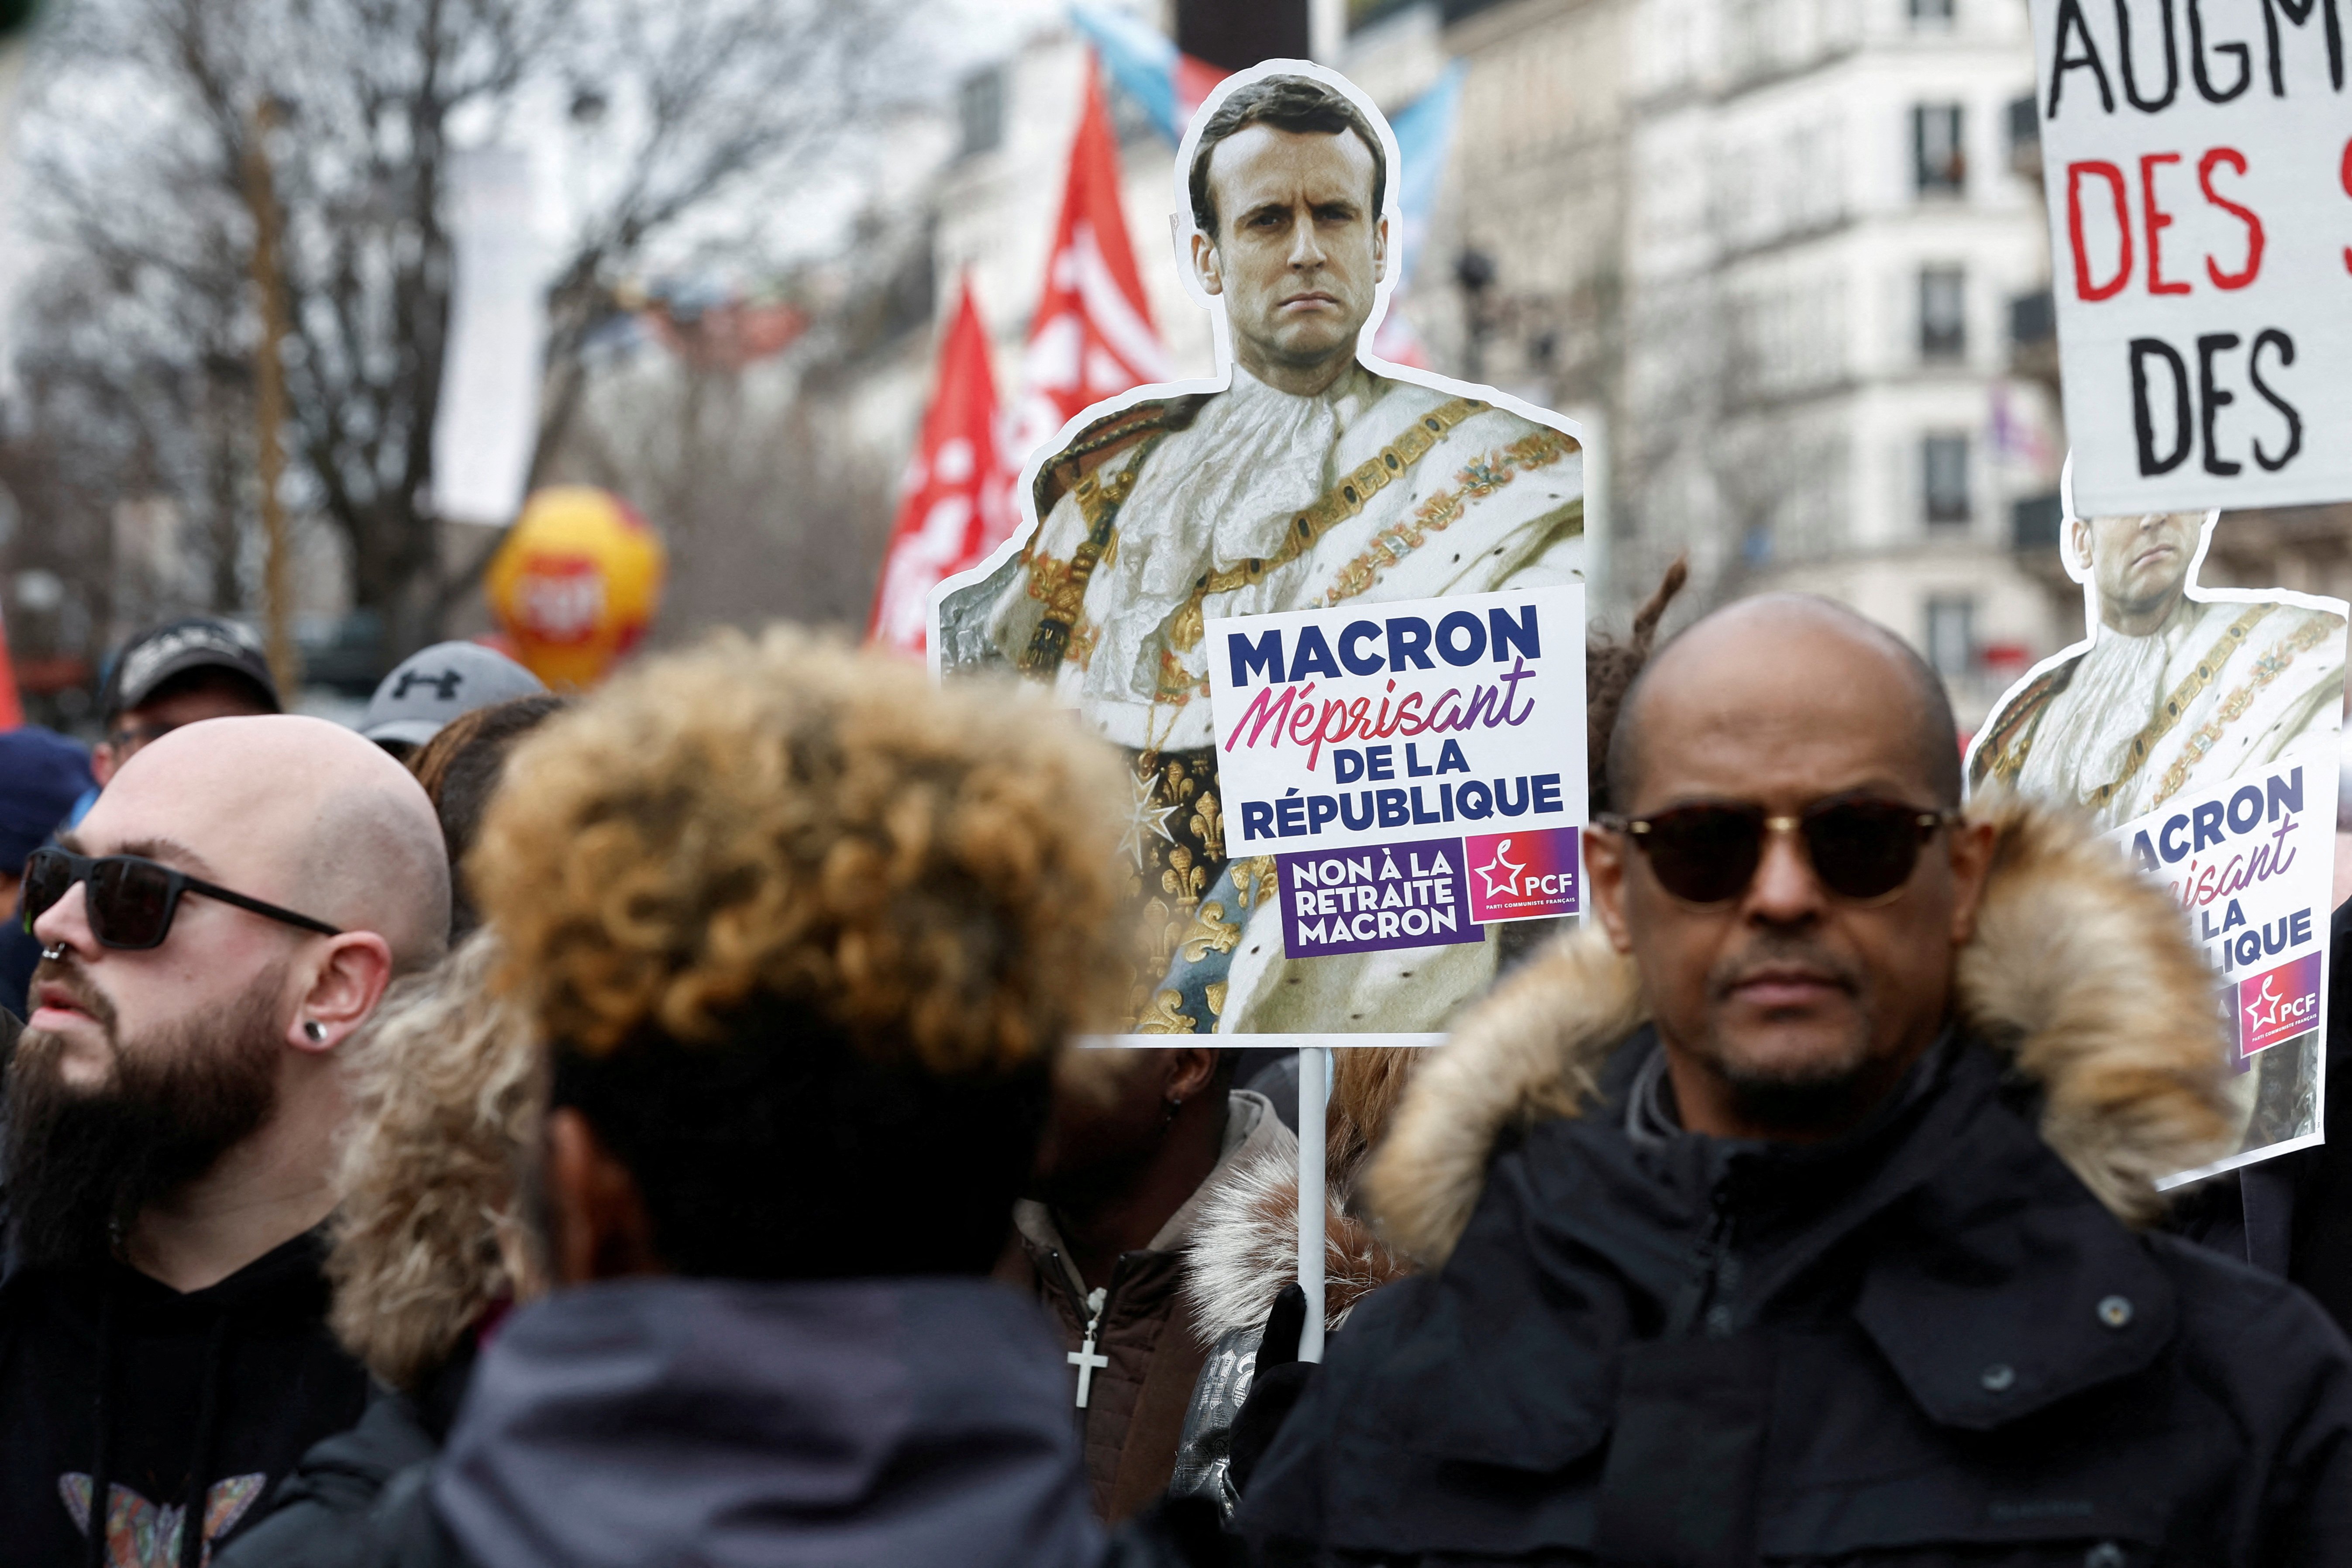 El presidente francés, Emmanuel Macron, ha realizado un llamamiento a la “responsabilidad” de las “oposiciones” (REUTERS/Benoit Tessier/File Photo)